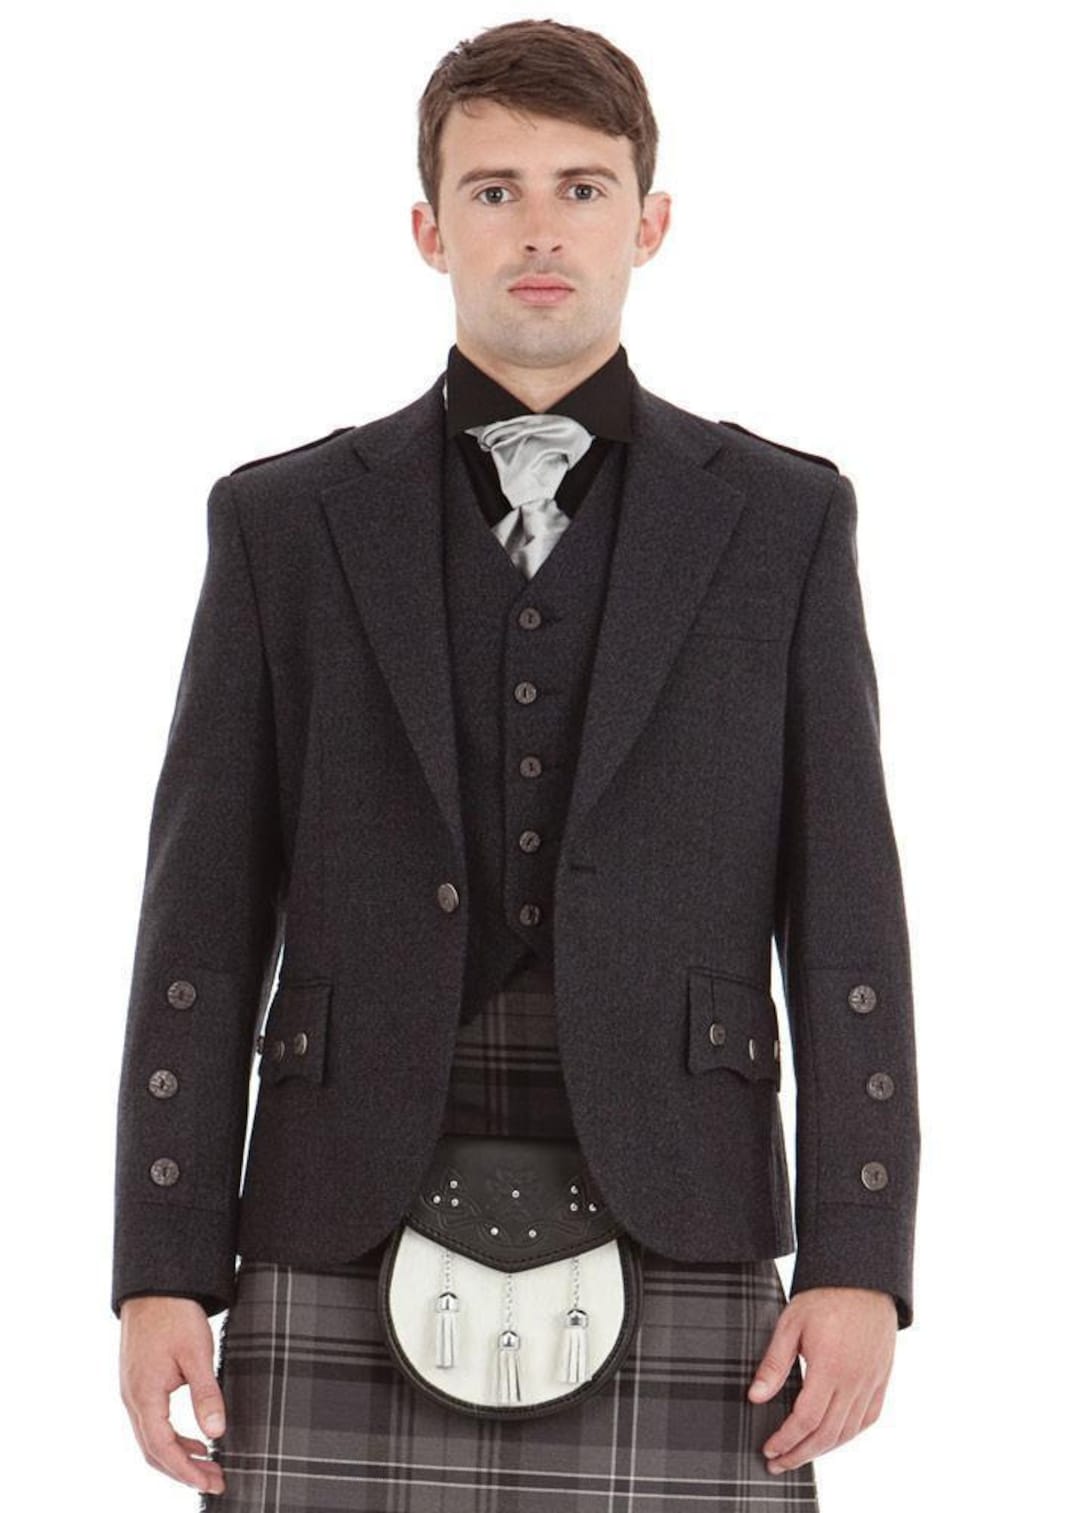 Men's Scottish Grey Tweed Wool Argyle Kilt Jacket With - Etsy UK